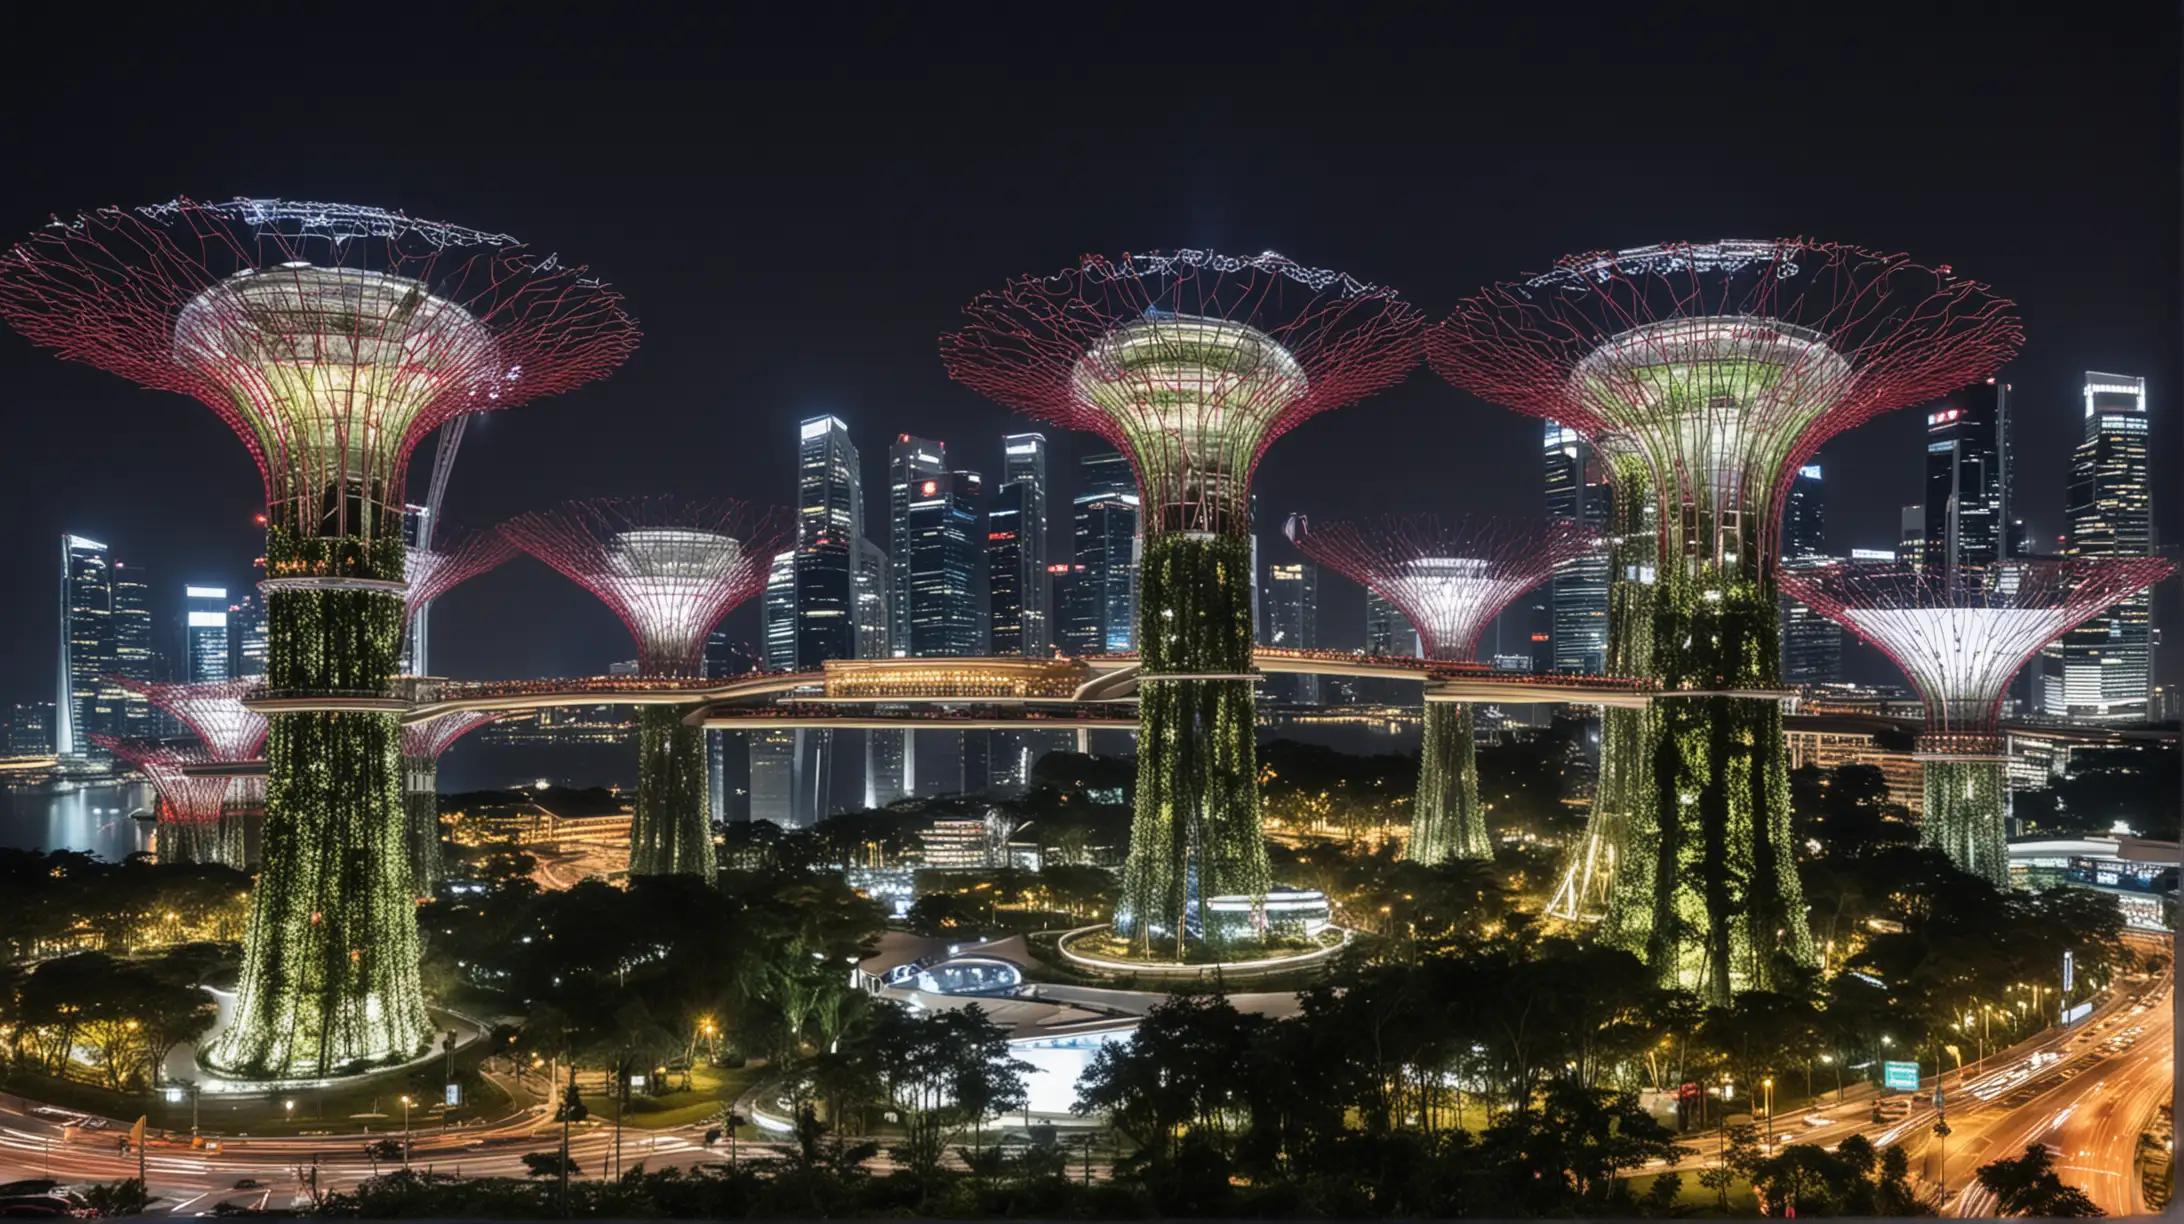 Futuristic Hub in Singapore Cityscape with Advanced Architecture